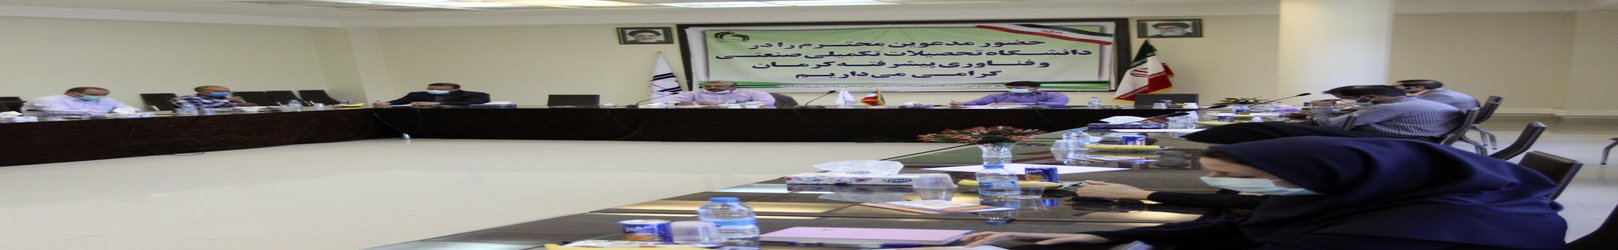 تفاهم نامه همکاری دانشگاه تحصیلات تکمیلی صنعتی و فناوری پیشرفته با مرکز تحقیقات وآموزش کشاورزی و منابع طبیعی استان کرمان مبادله شد.